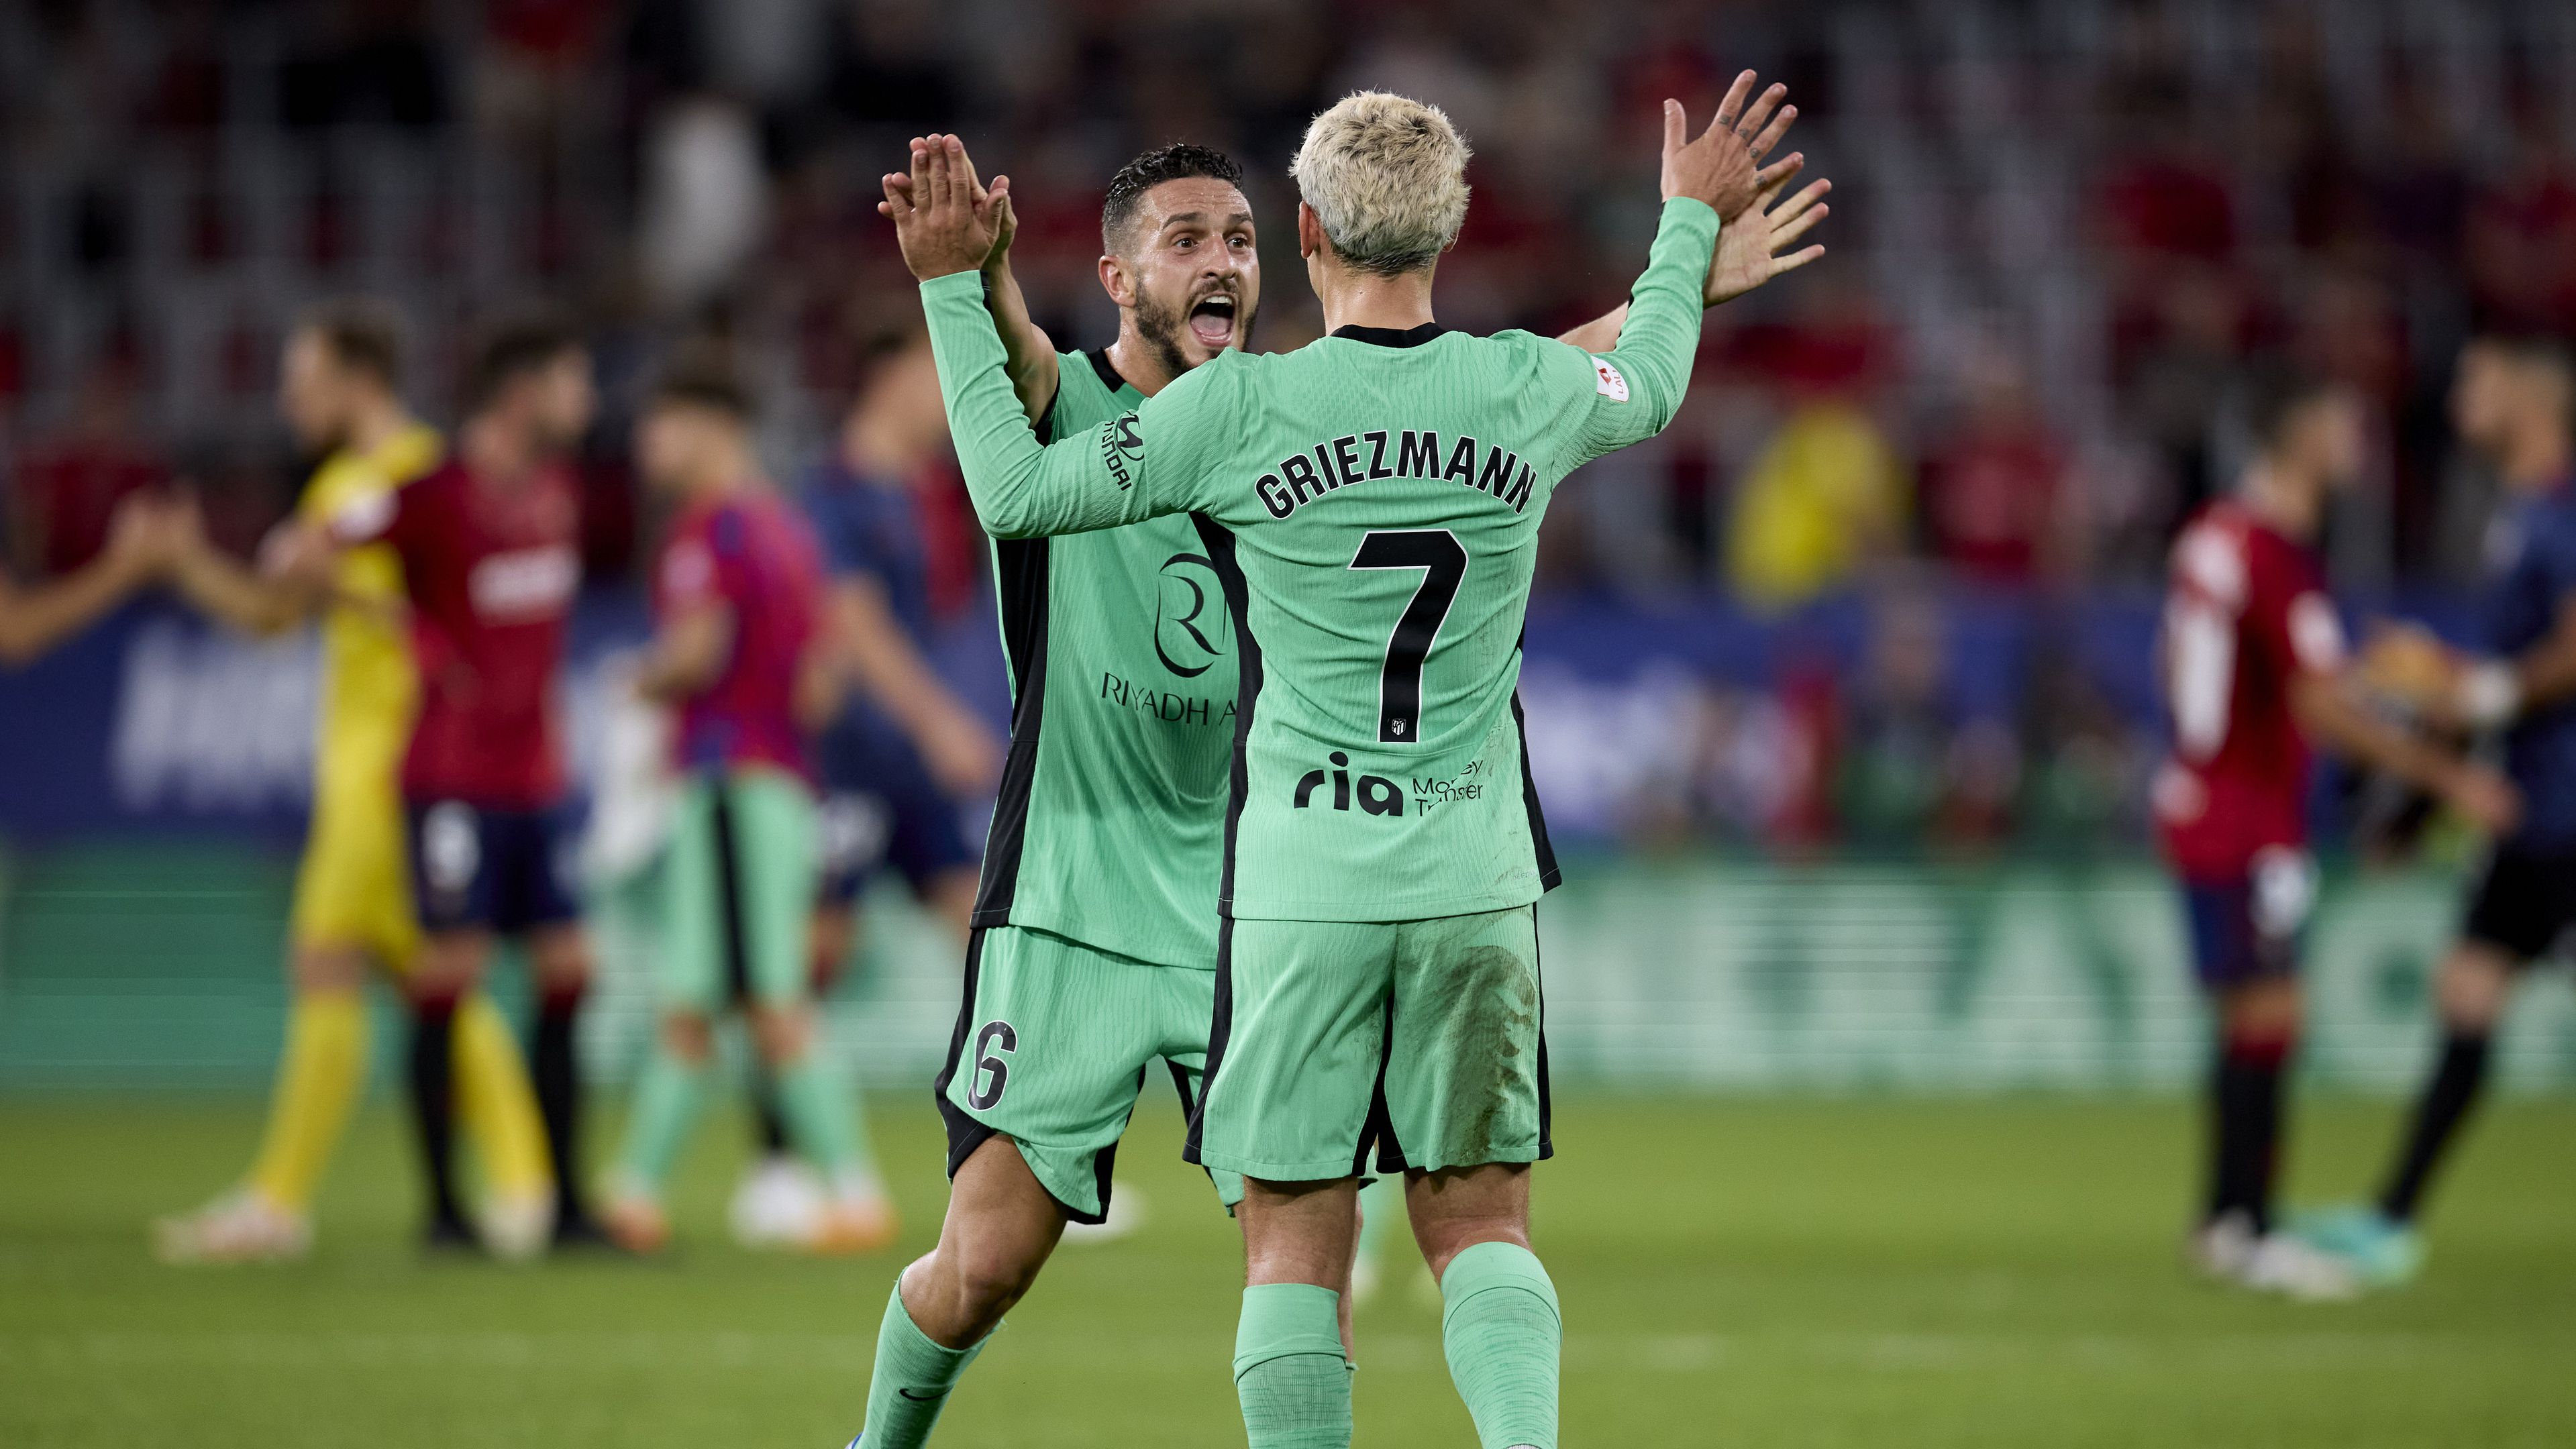 Griezmann lehetetlen gólt lőtt, az Atlético nehezen nyert a három kiállítást hozó meccsen – videóval